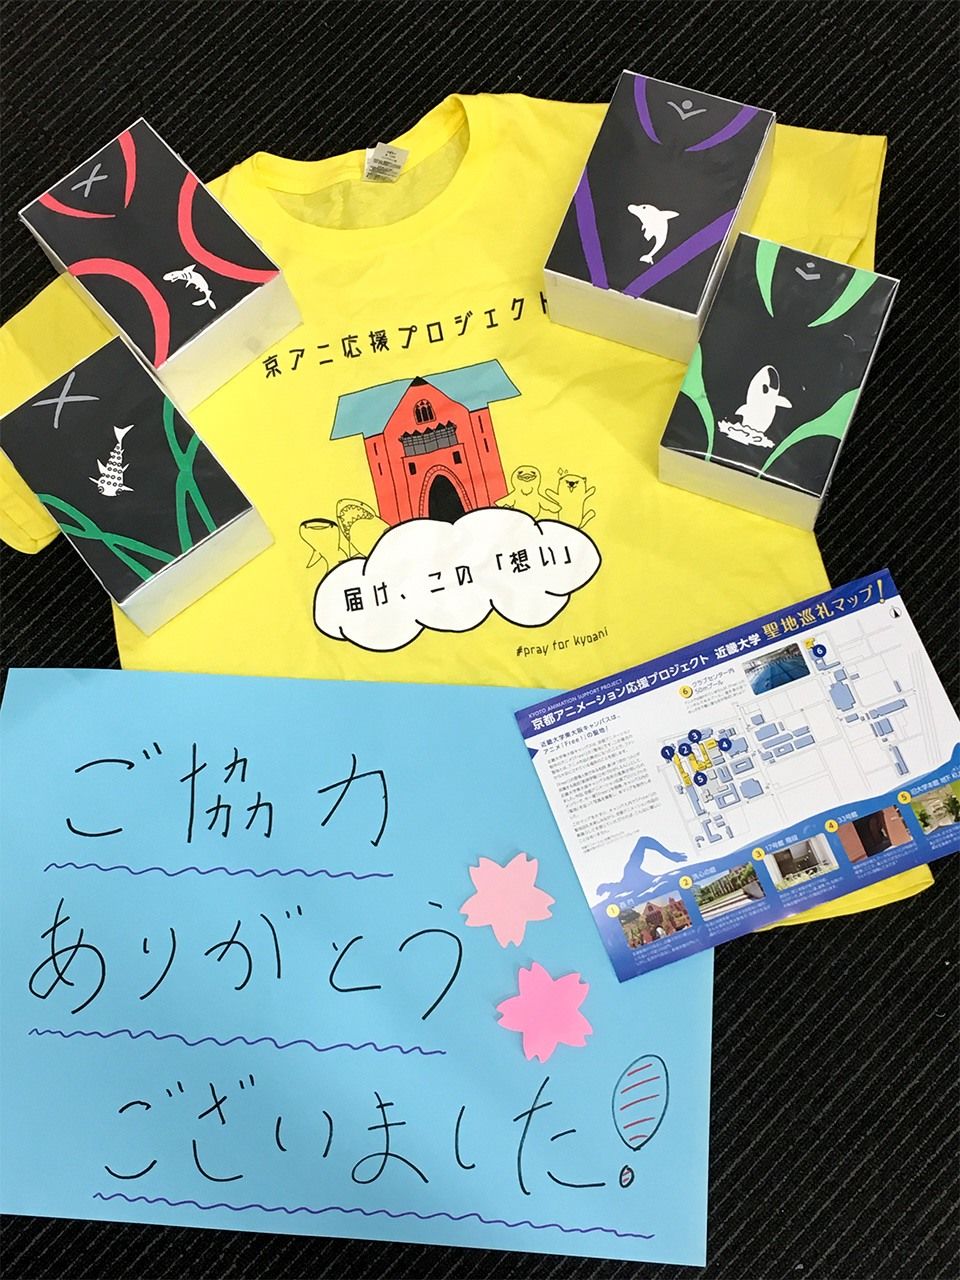 近畿大學京阿尼援助活動中使用的工作服T恤等。捐款人每人都獲得一張東大阪校區的「聖地巡禮地圖」